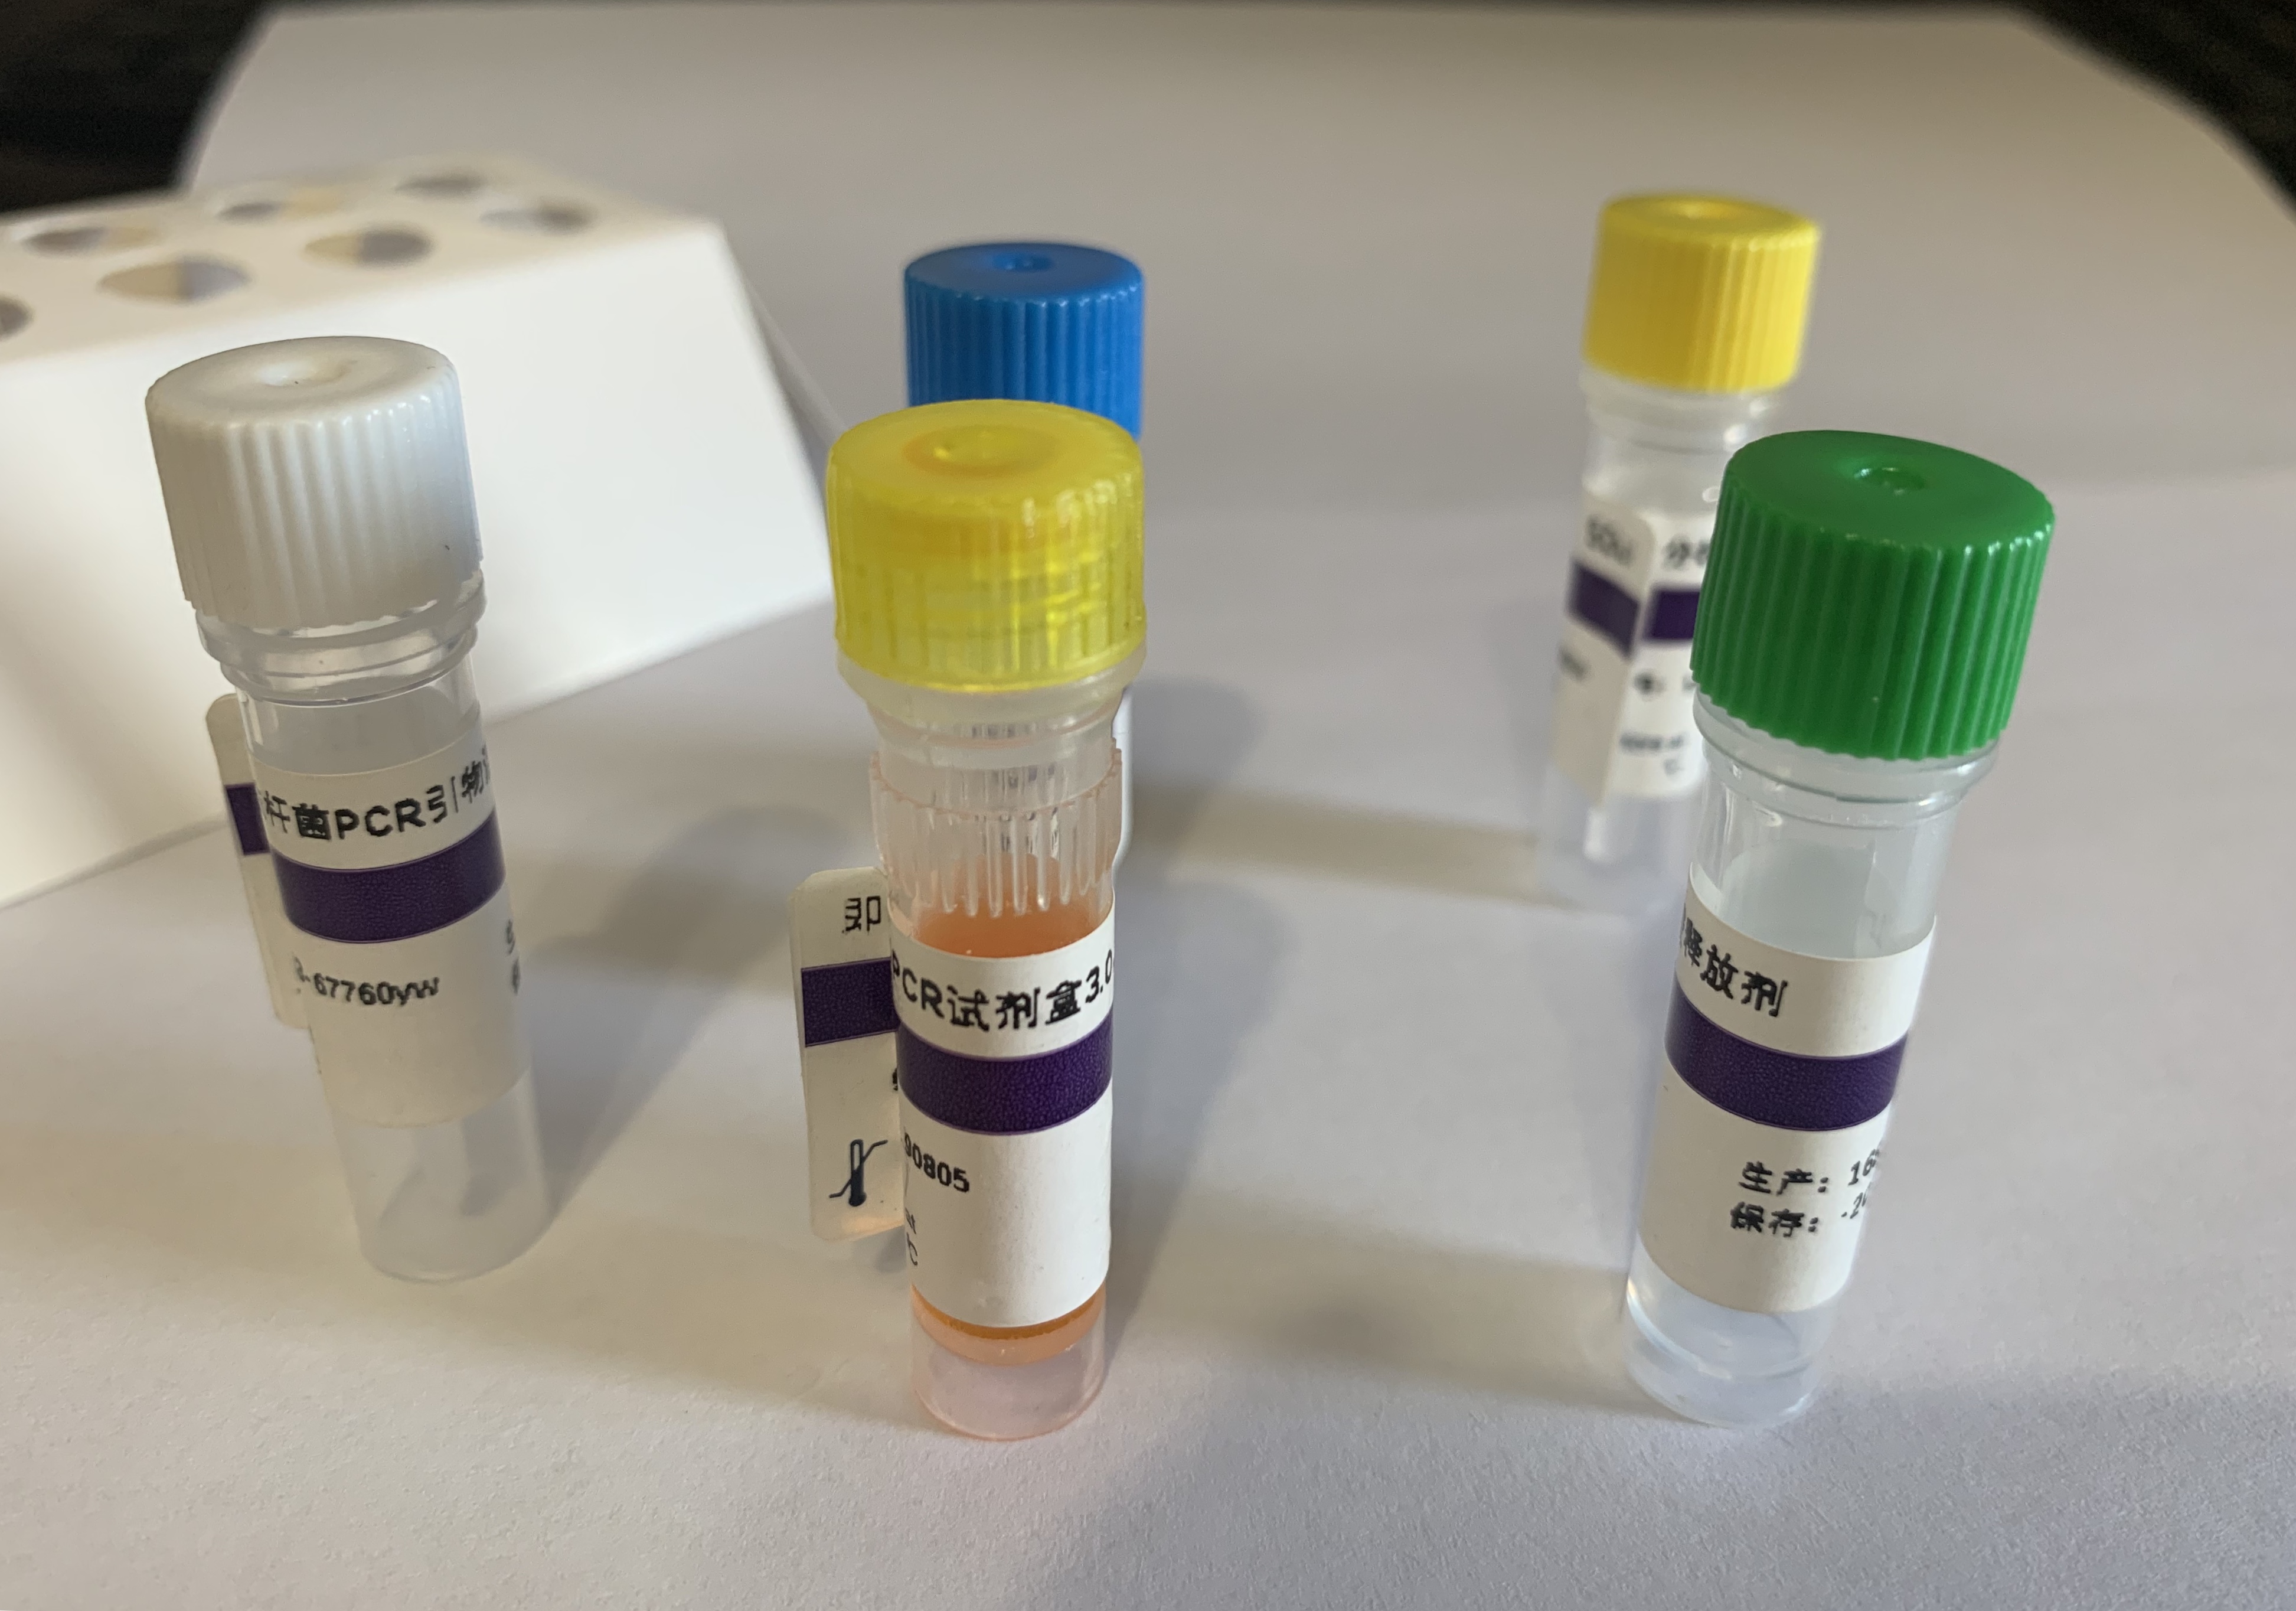 禽白血病病毒E亚群RT-PCR试剂盒